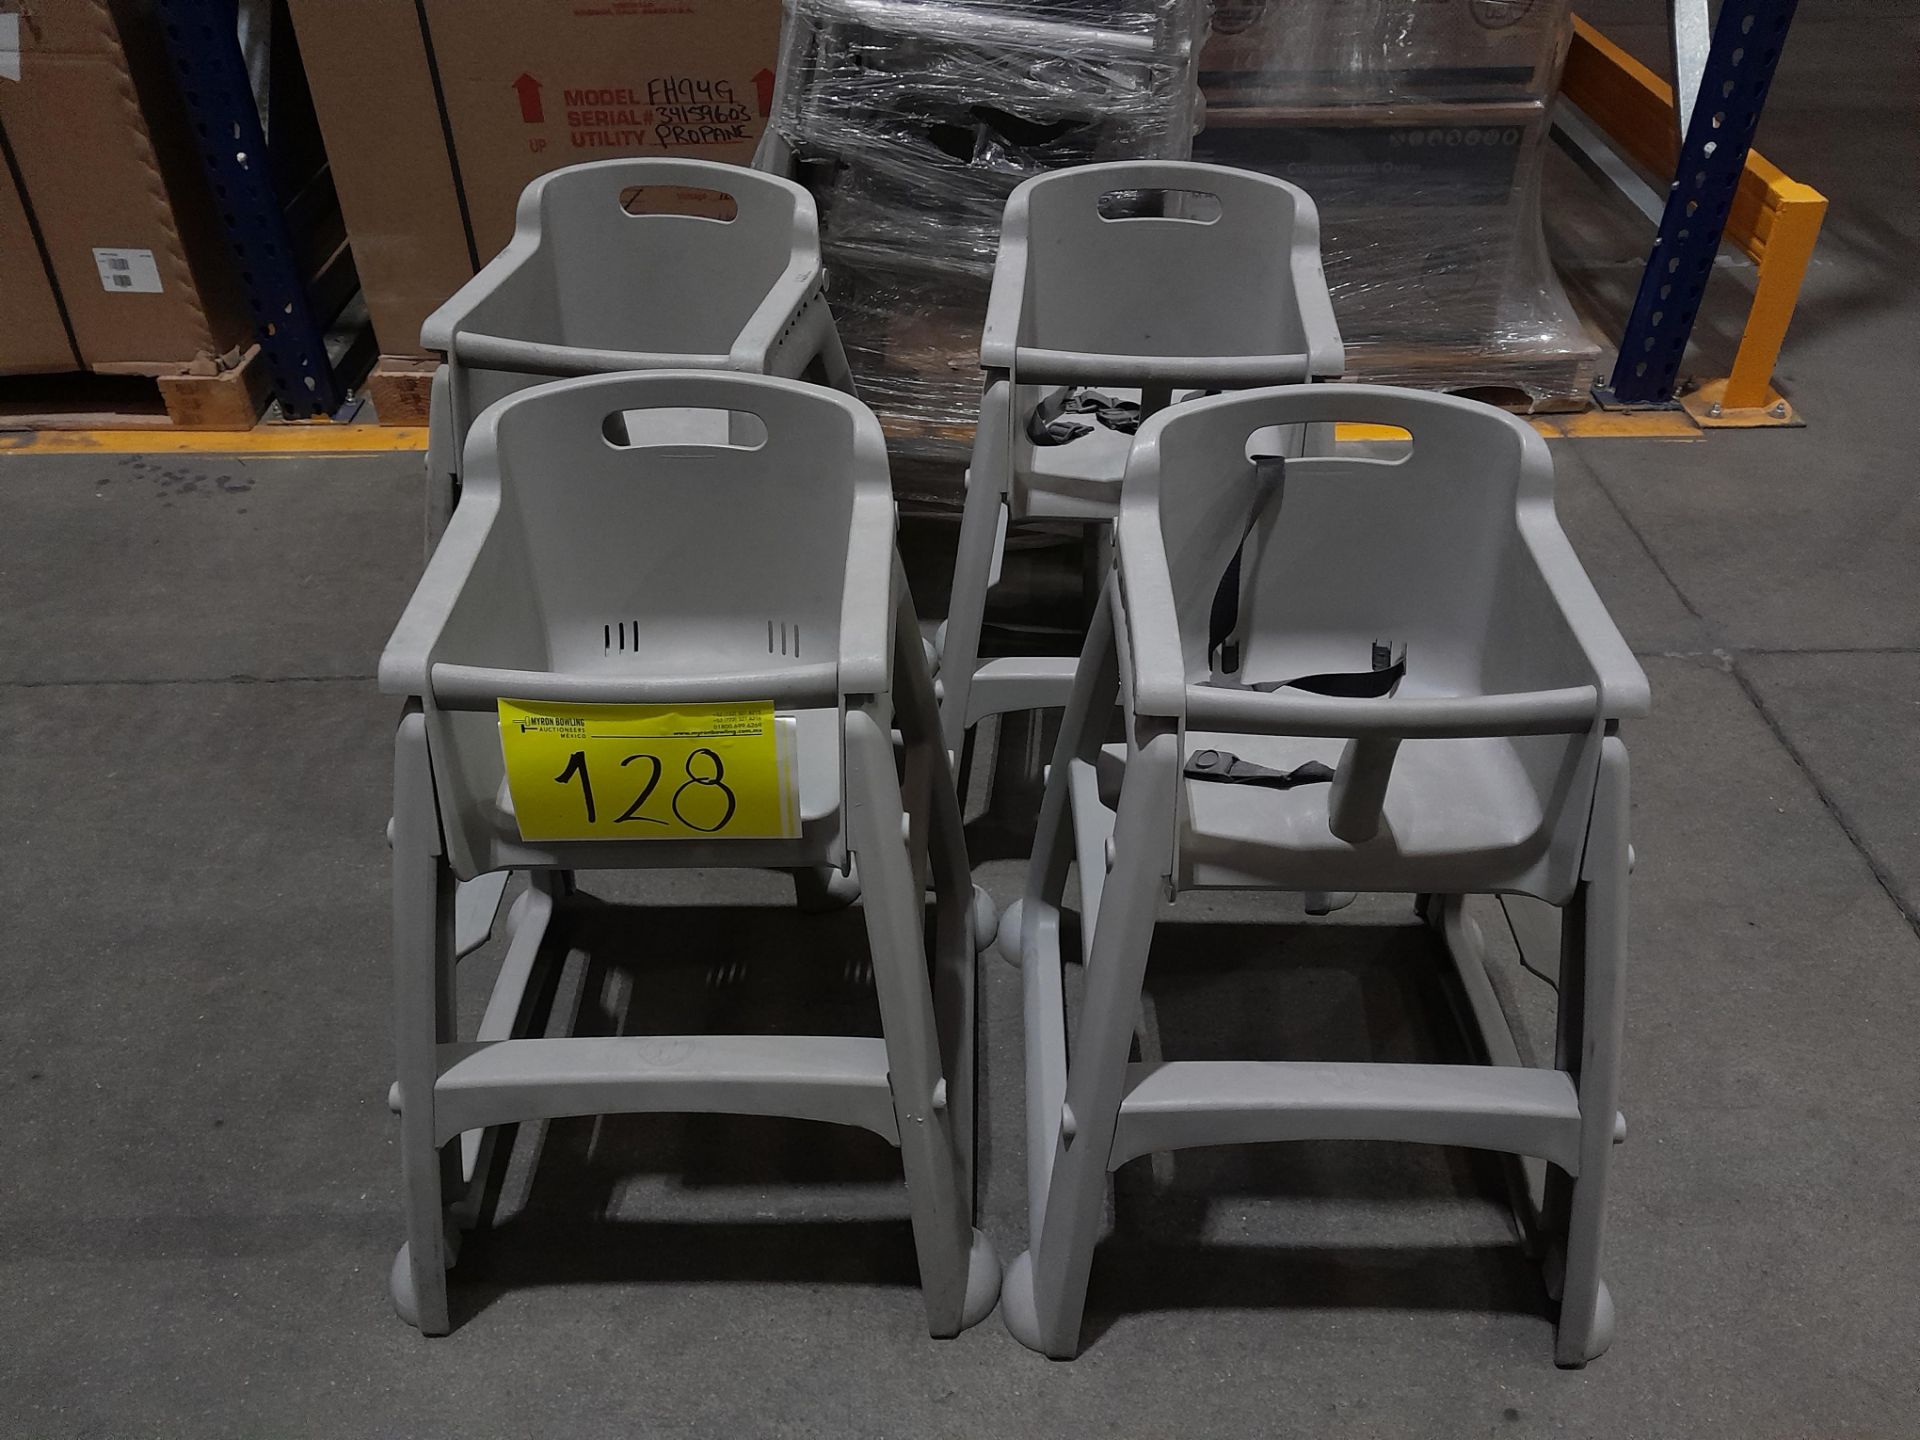 Lote de 7 sillas periqueras para niño, color gris (Equipo usado)